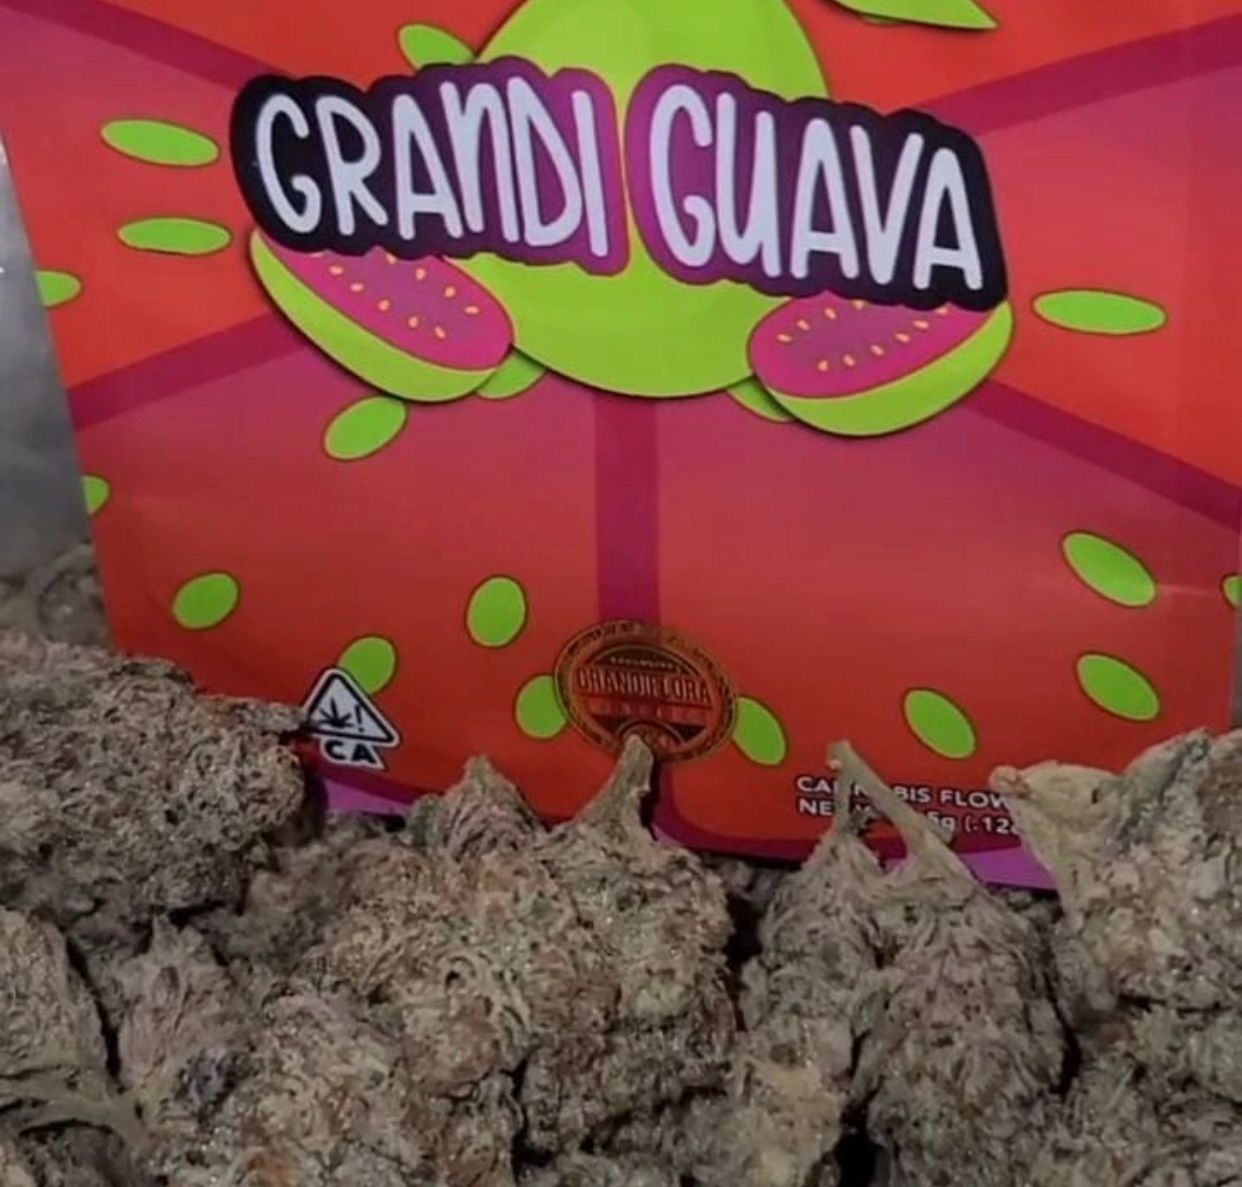 Buy Grandi Guava Grandiflora Strain Online